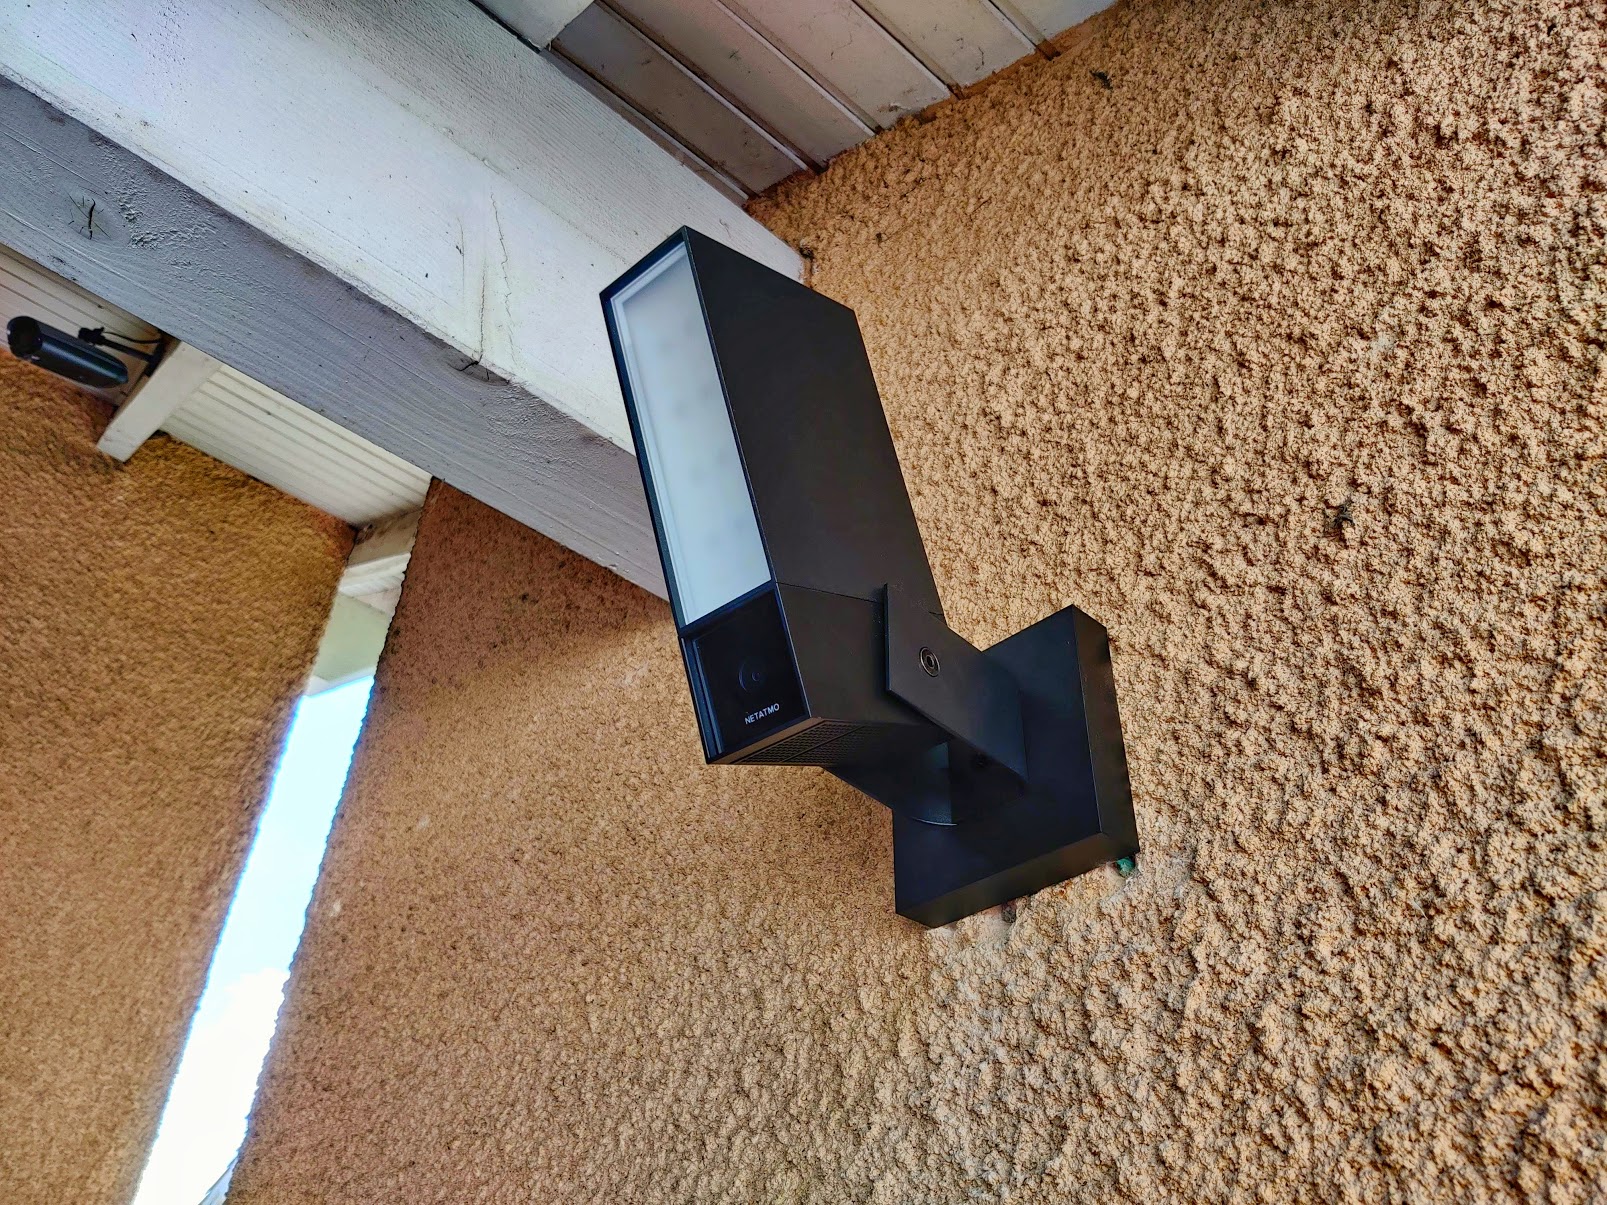 Caméra de surveillance extérieure avec lampe LED connectée